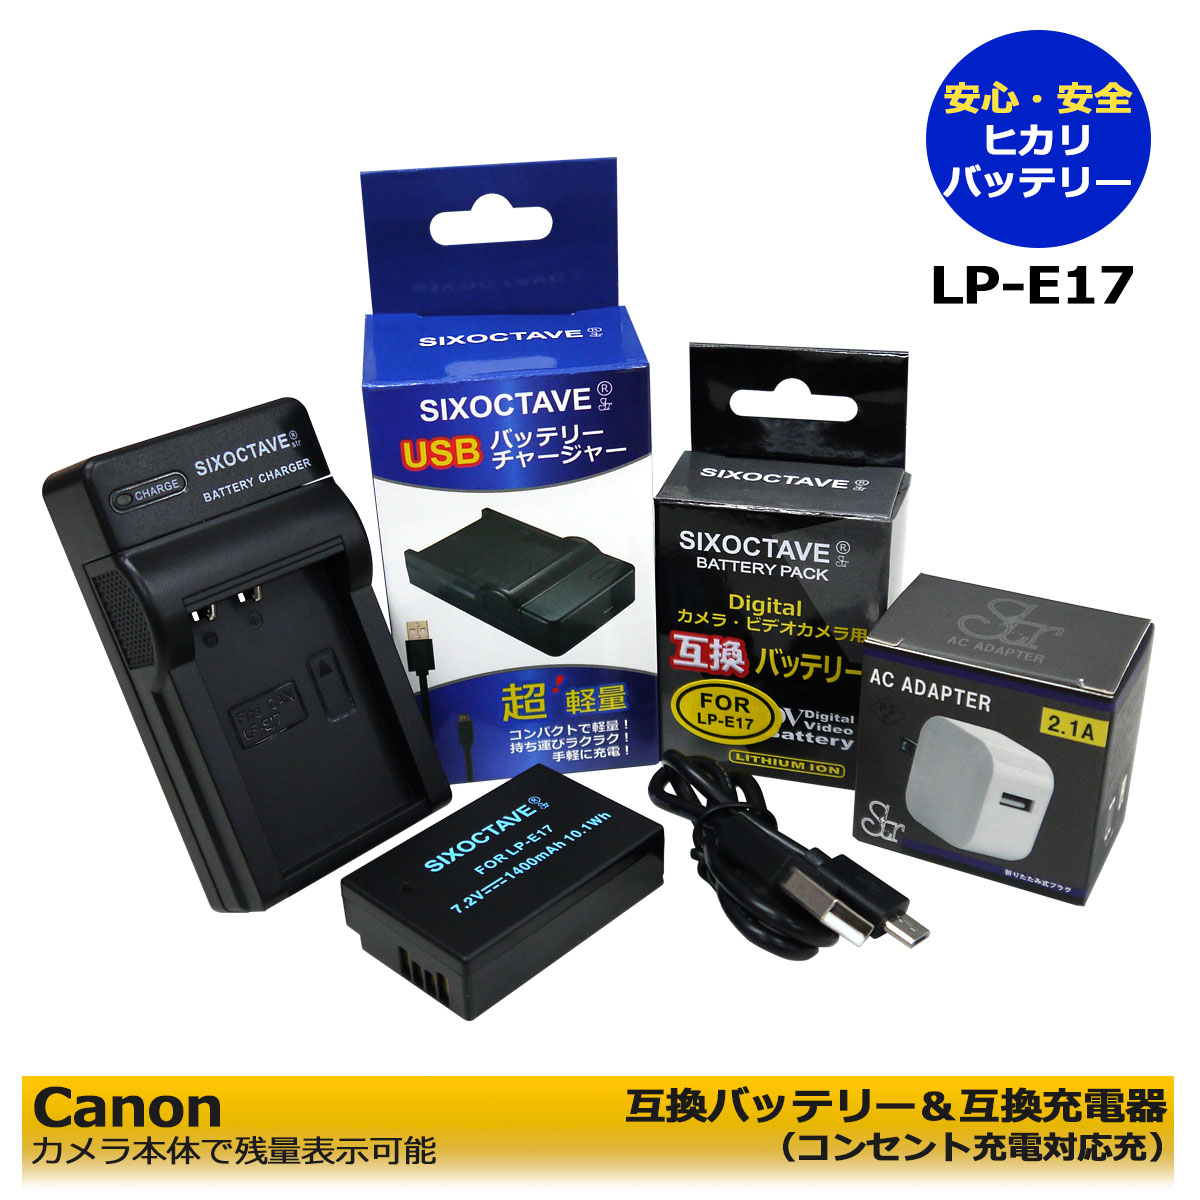 ★コンセント充電可能★ キャノン Canon LP-E17 互換バッテリー 1個と 互換充電器 LC-E17 1個と ACアダプター1個の 3点セット EOS RP / EOS M3 / EOS M5 / EOS M6 / EOS M6 Mark II / EOS 77D / EOS 200D / EOS R8 / EOS R50 / EOS Kiss X10i / EOS R10 (A2.1)